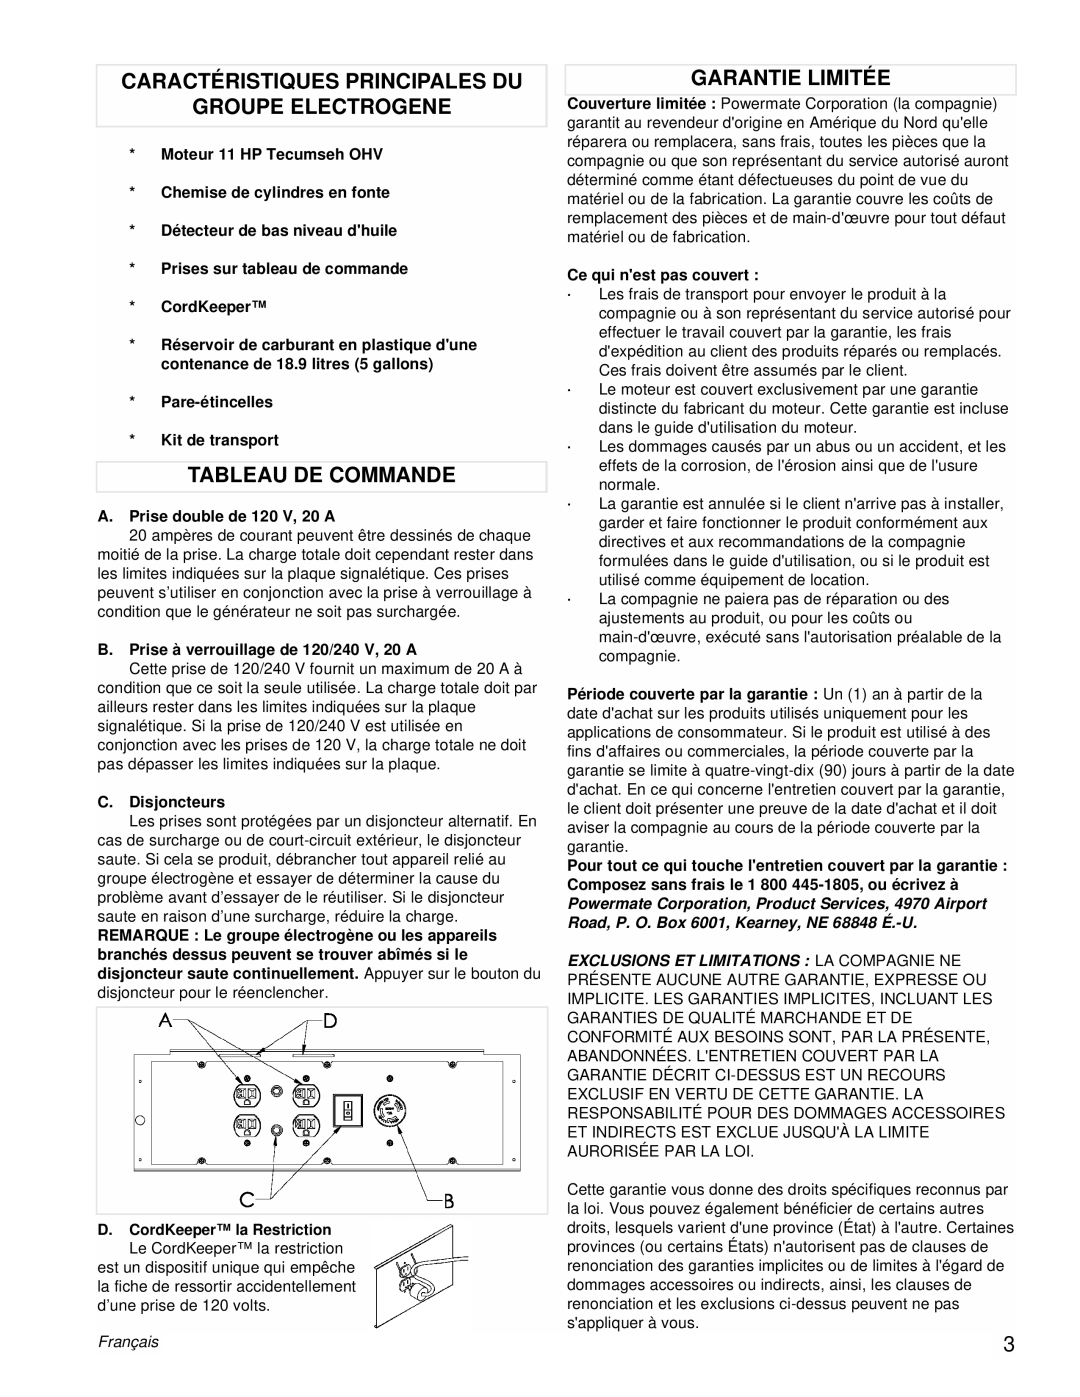 Powermate PMC525300 Caractéristiques Principales Du Groupe Electrogene, Tableau De Commande, Garantie Limitée, Français 